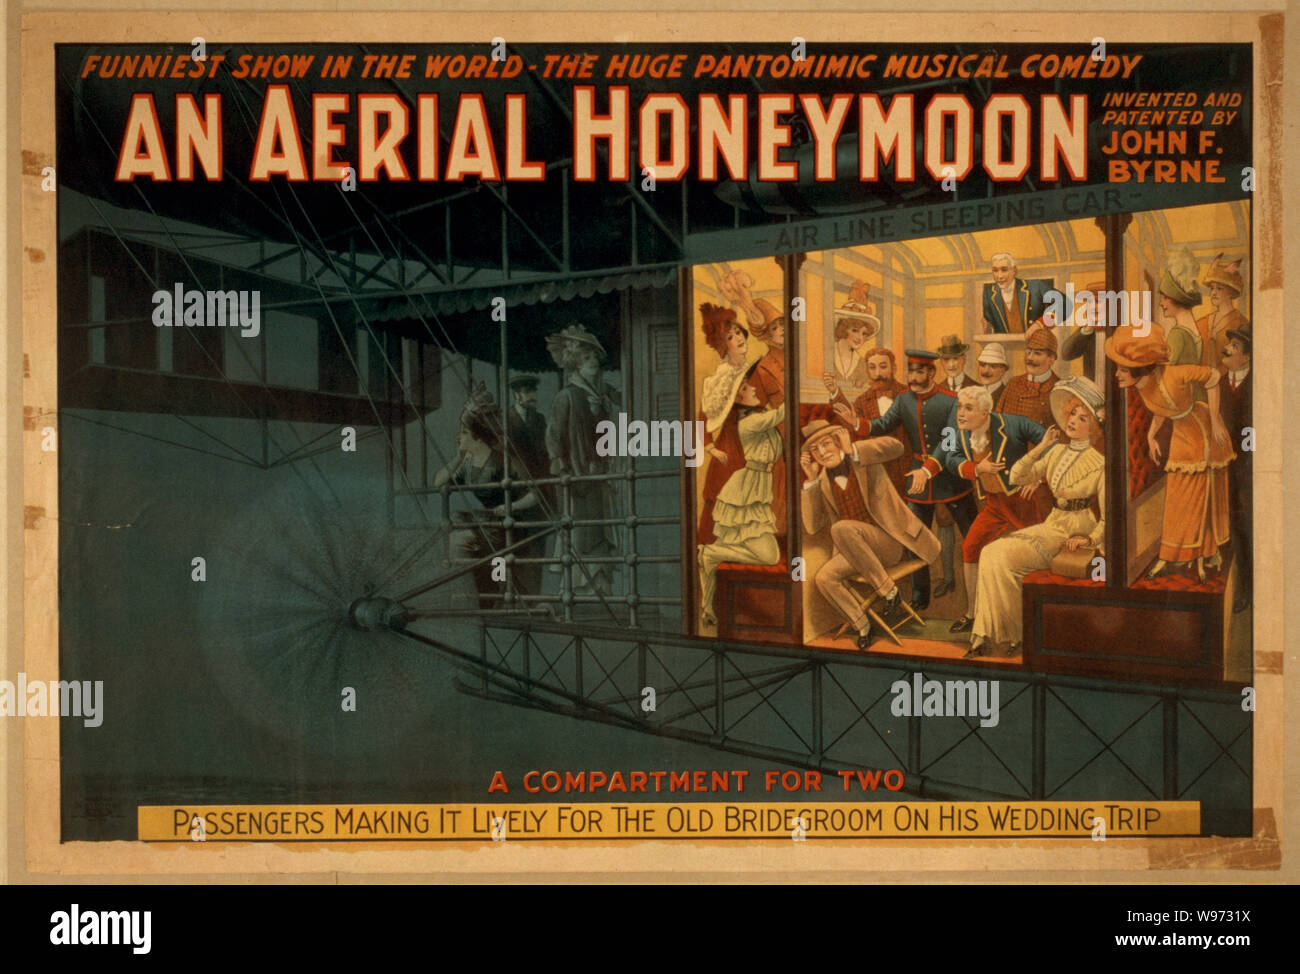 Un' antenna luna di miele ha inventato e brevettato da John F. Byrne : mostrare più divertente del mondo - l'enorme pantomimic commedia musicale. Foto Stock